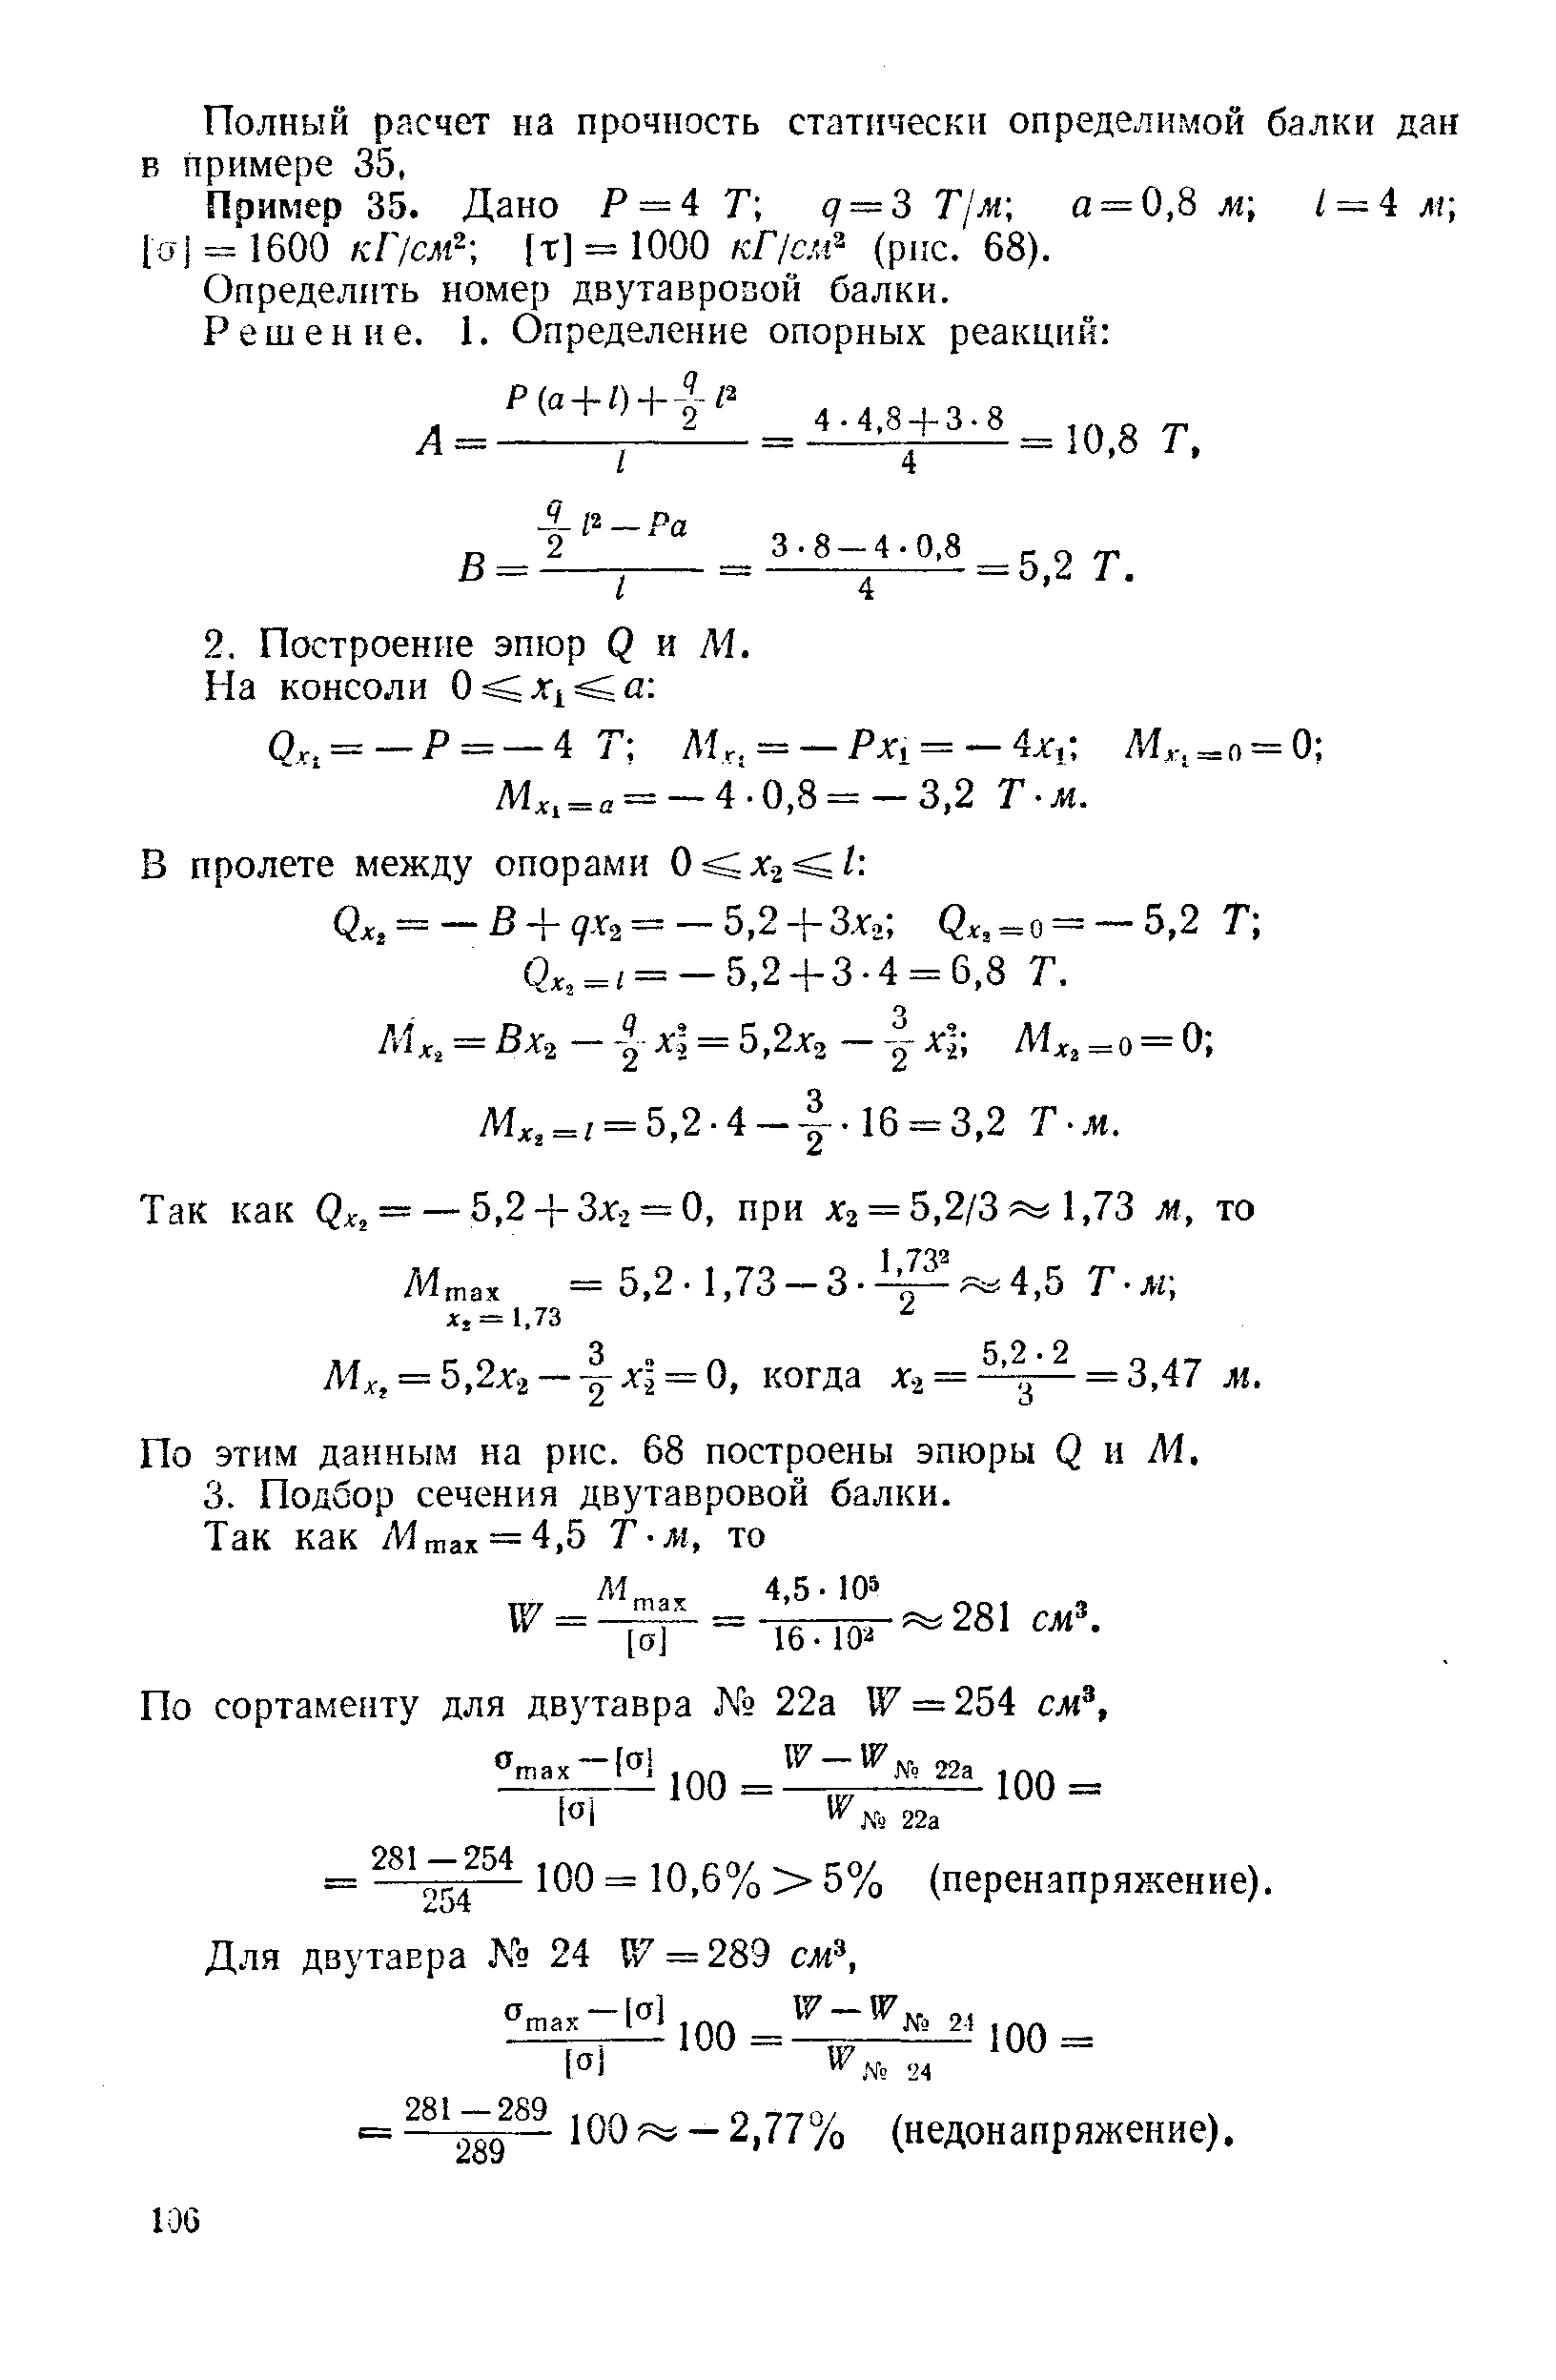 2хг — х = 0, когда x-i = - = 3,47 м.
